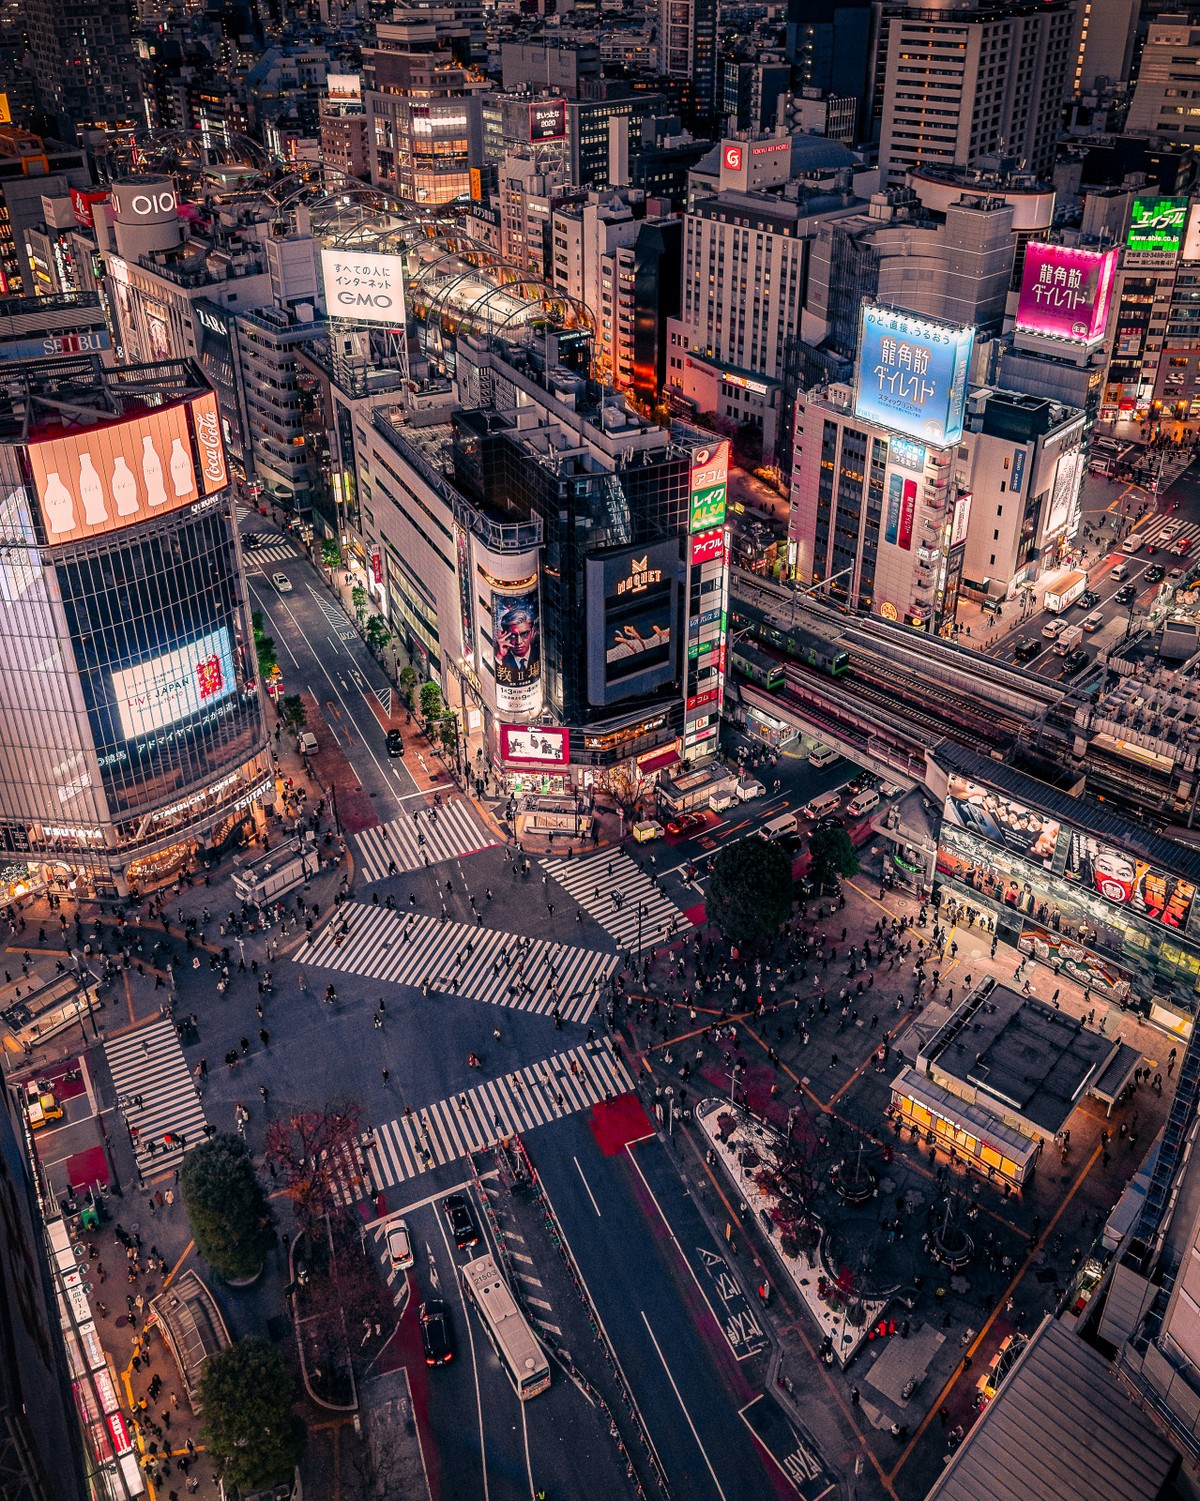 На улицах Токио города, Казуя, фотосъемку, Токио, Японский, площади, своими, аудиторией, делится, Instagram, языке, английском, ведёт, Юноша, Москвой, можно, размеру, сопоставить, интересными, плотность